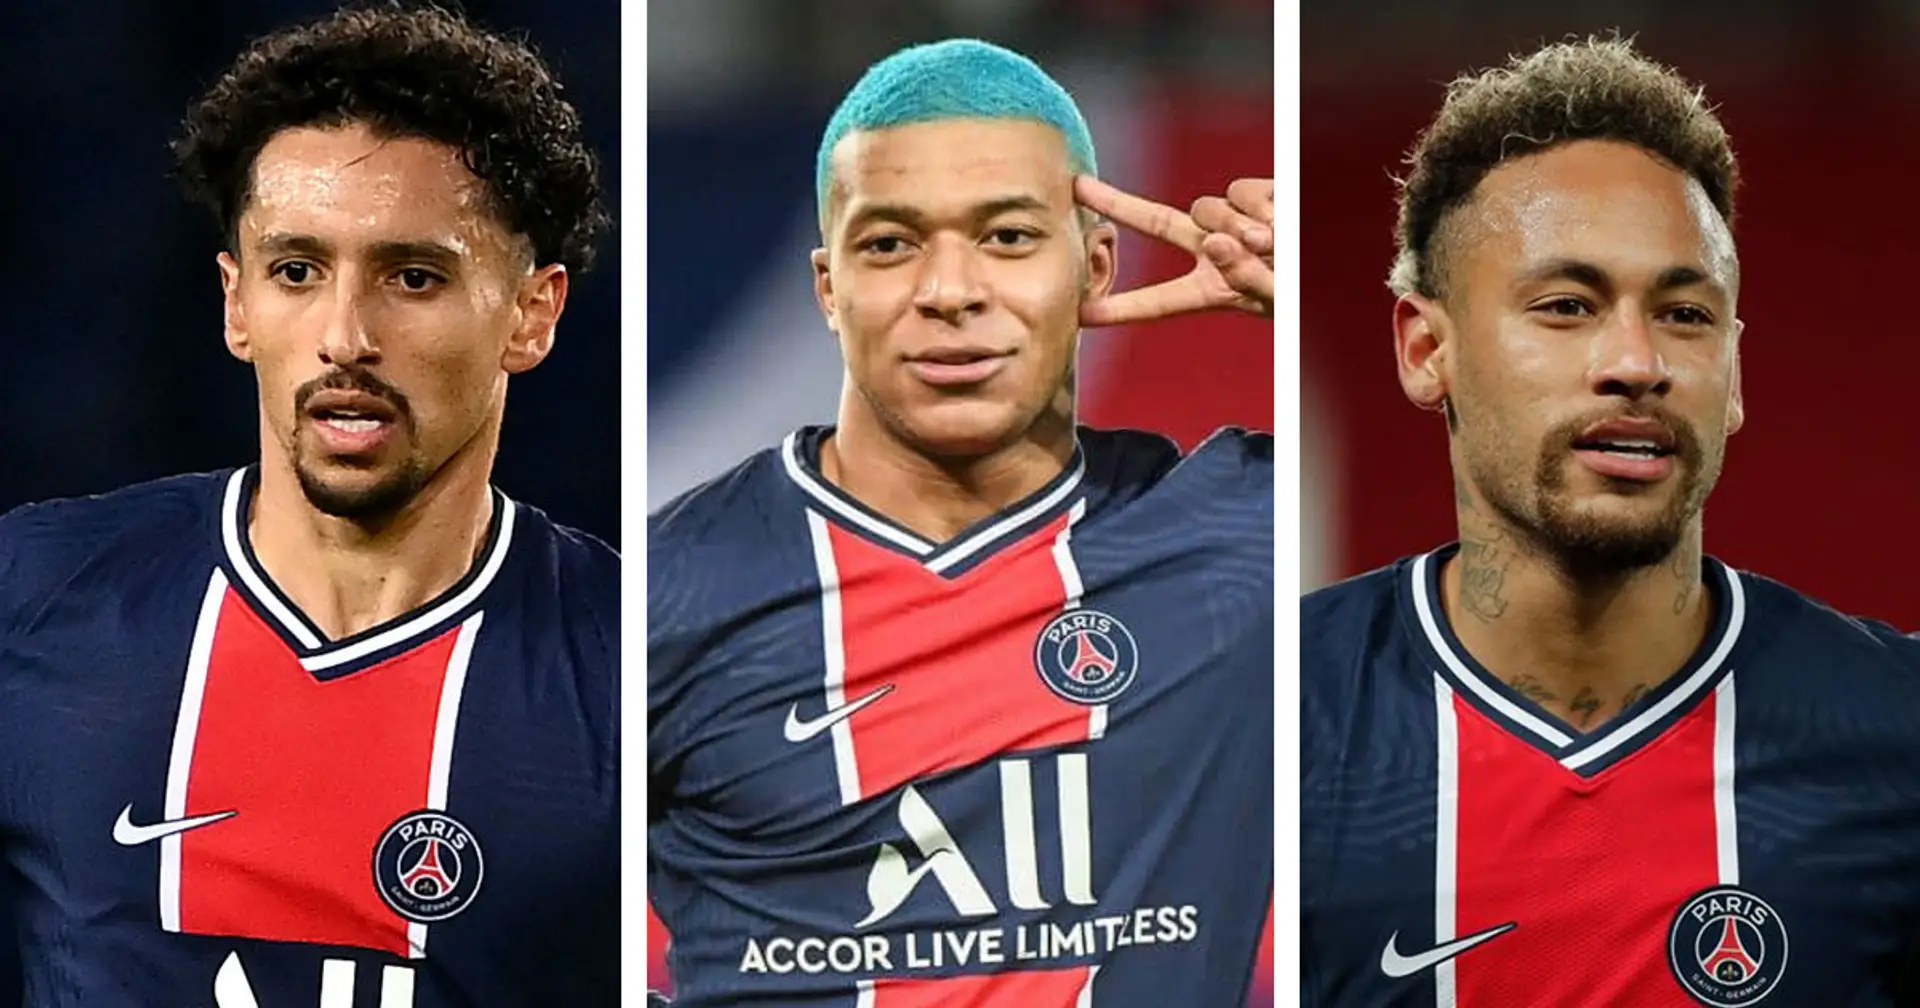 Le Top 10 des joueurs de Ligue 1 les plus chers révélé : 6 parisiens dans le Top 10